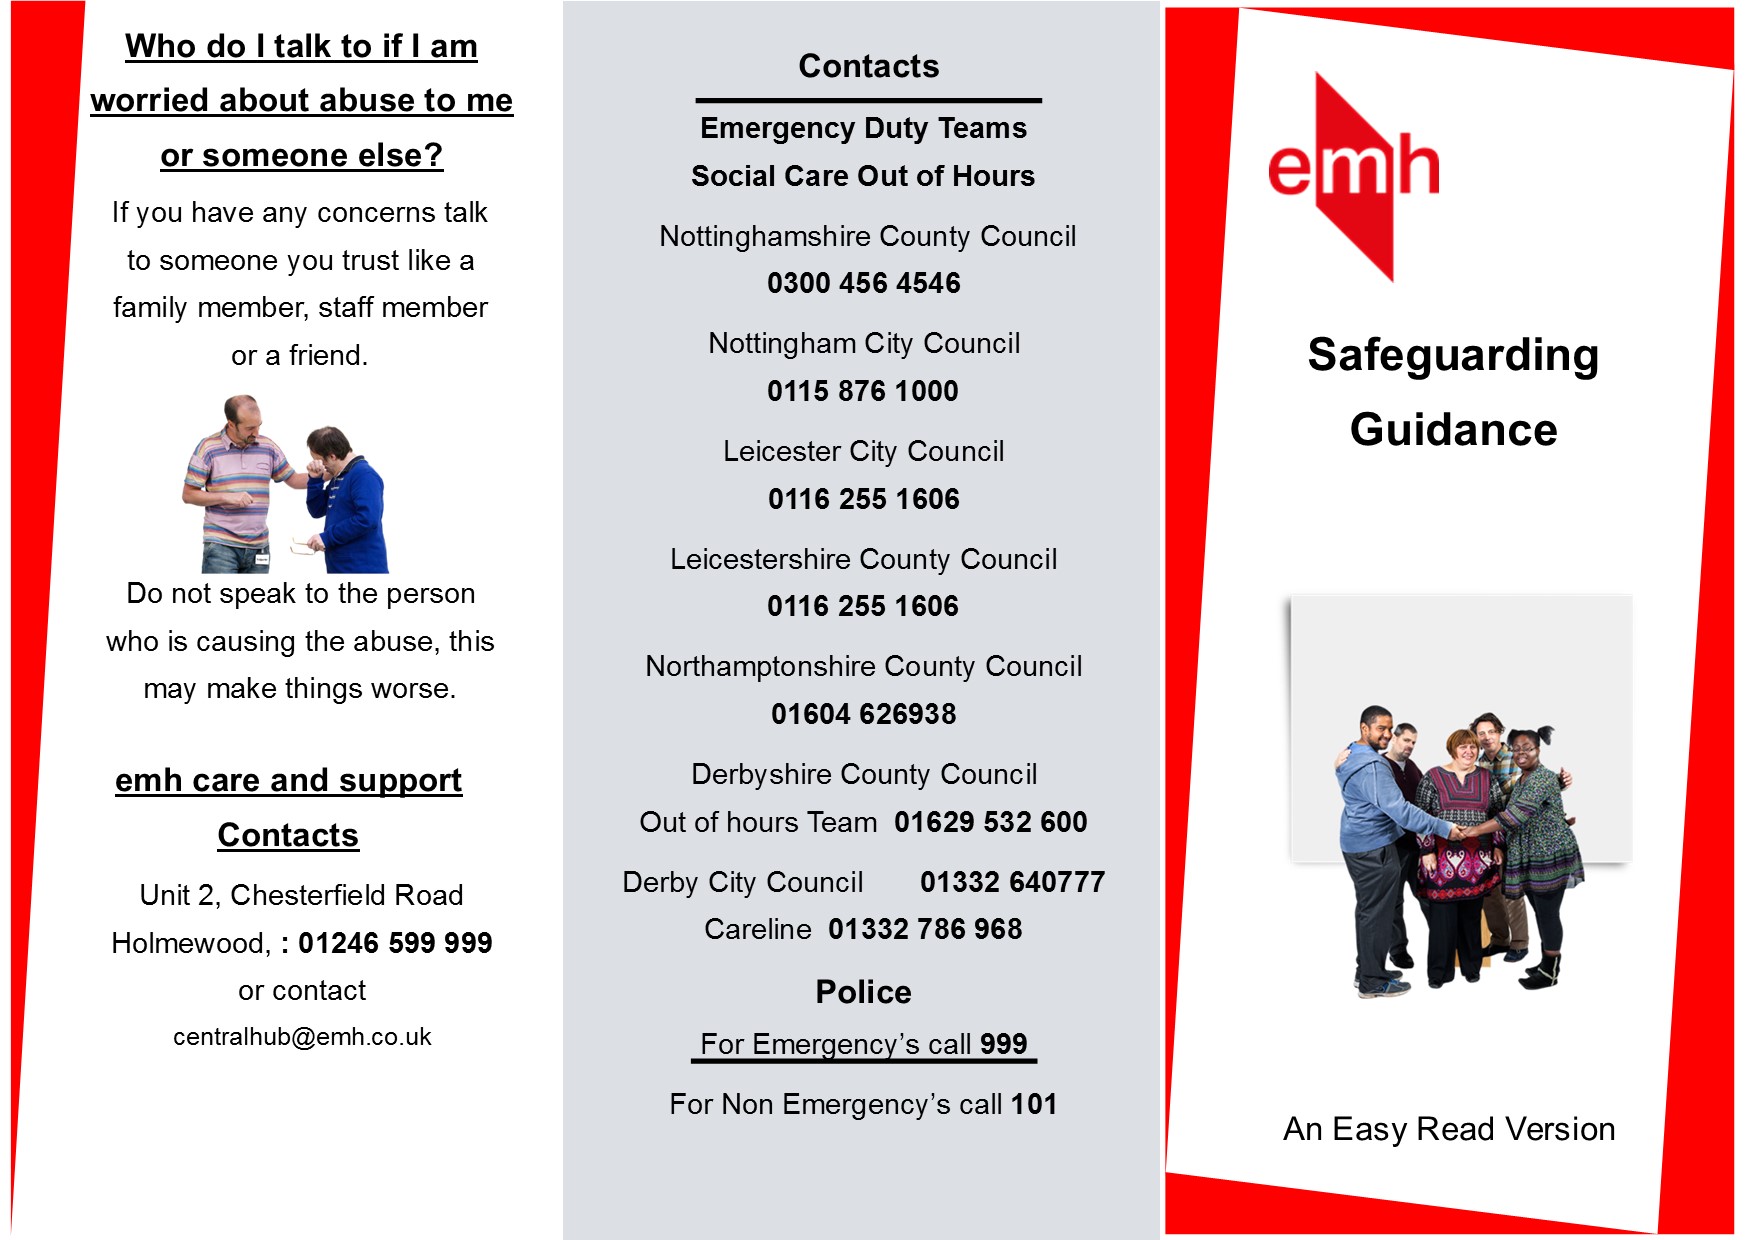 A jpg image information leaflet regarding Safeguarding